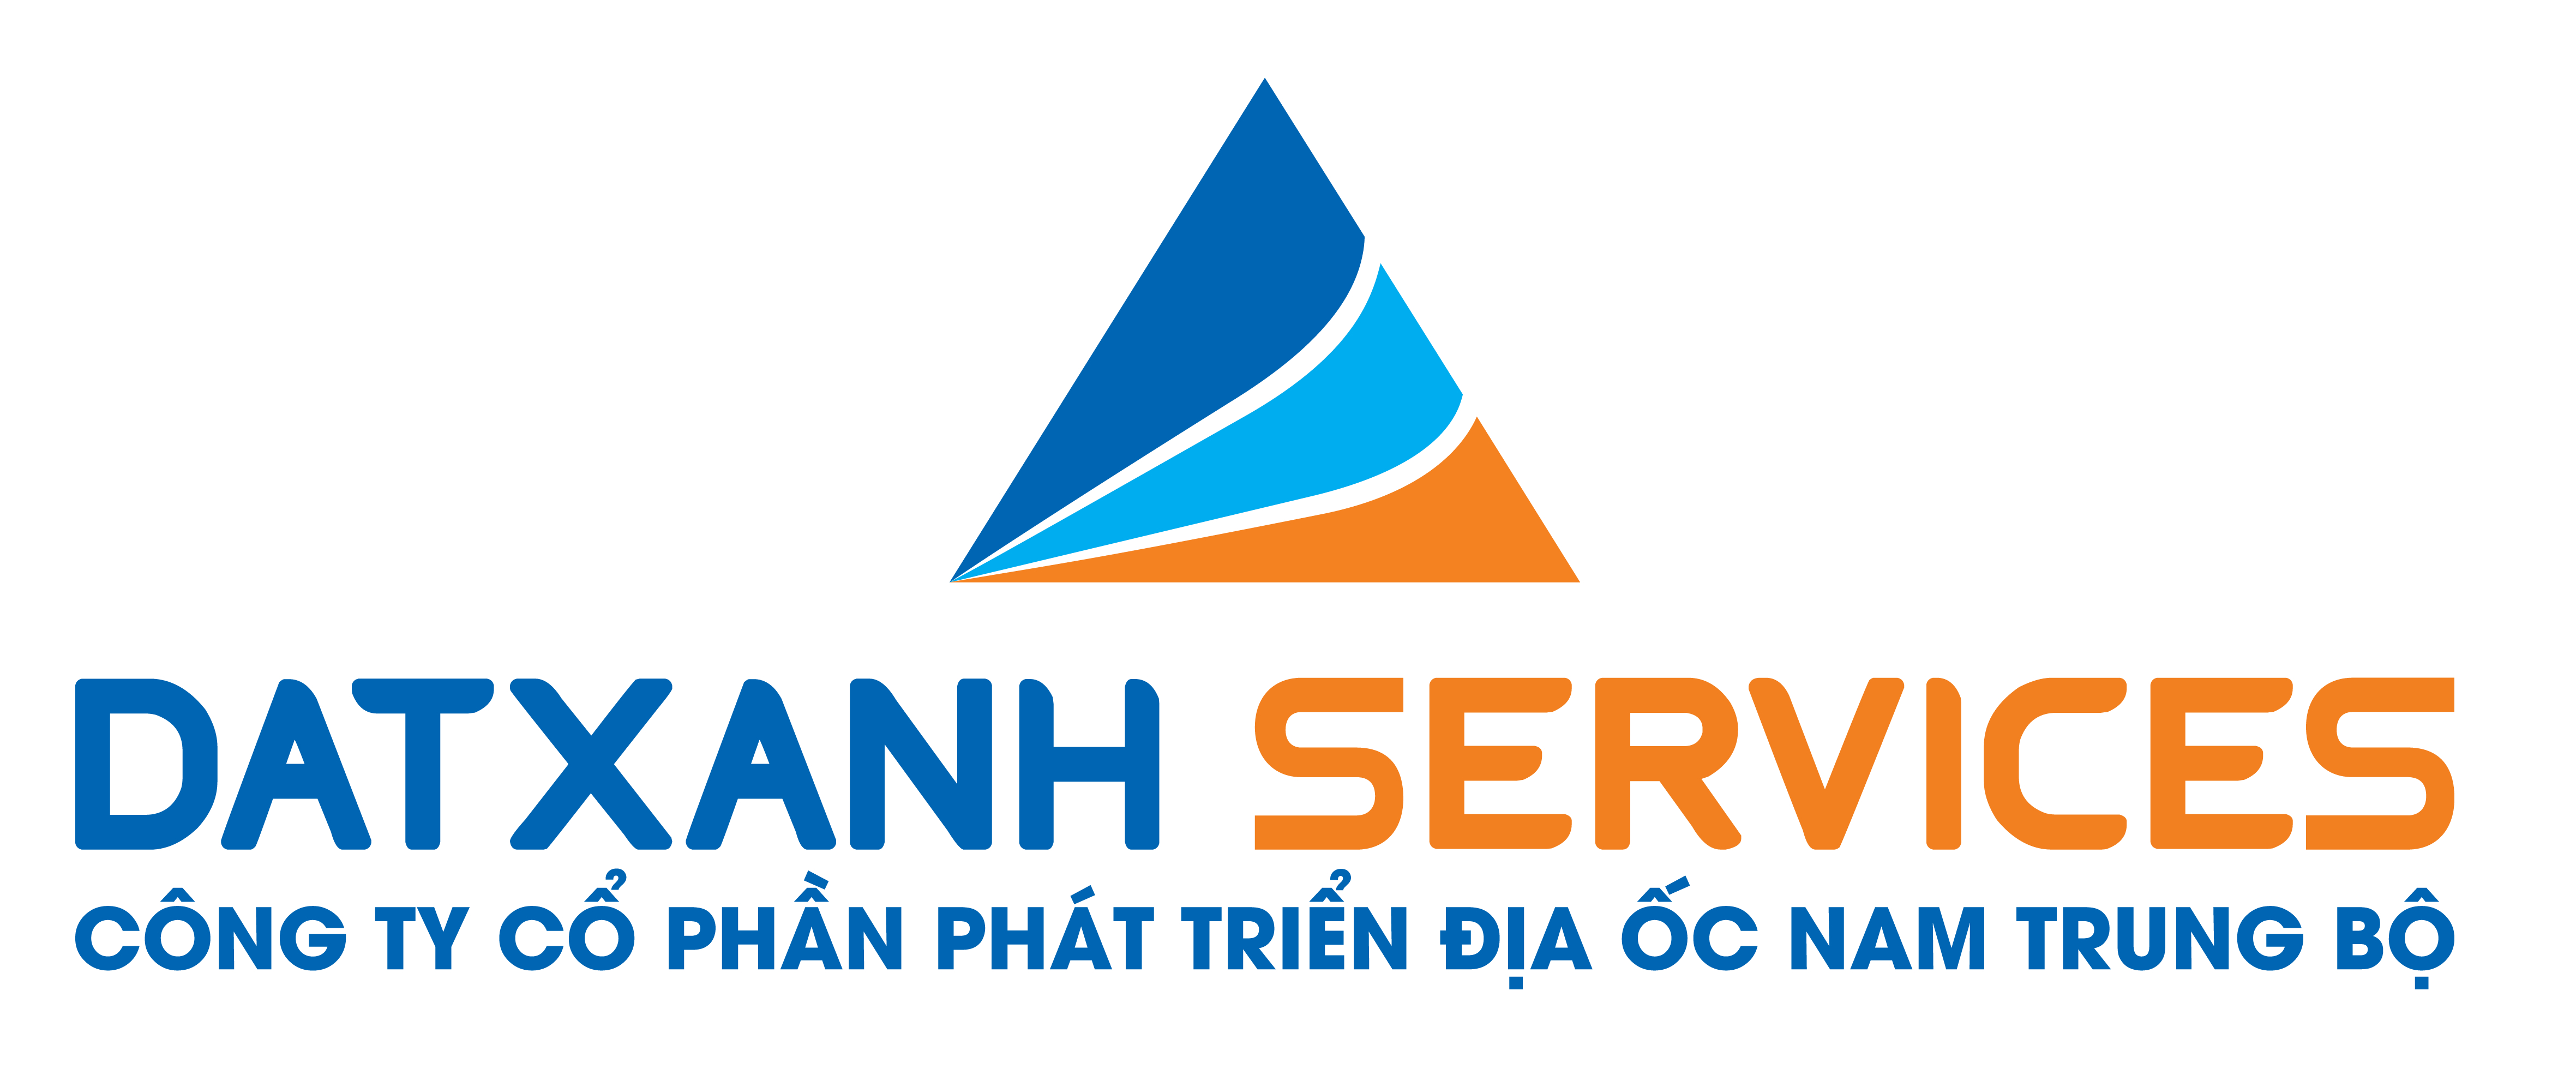 Cổng thông tin, dịch vụ BĐS Nam Trung Bộ